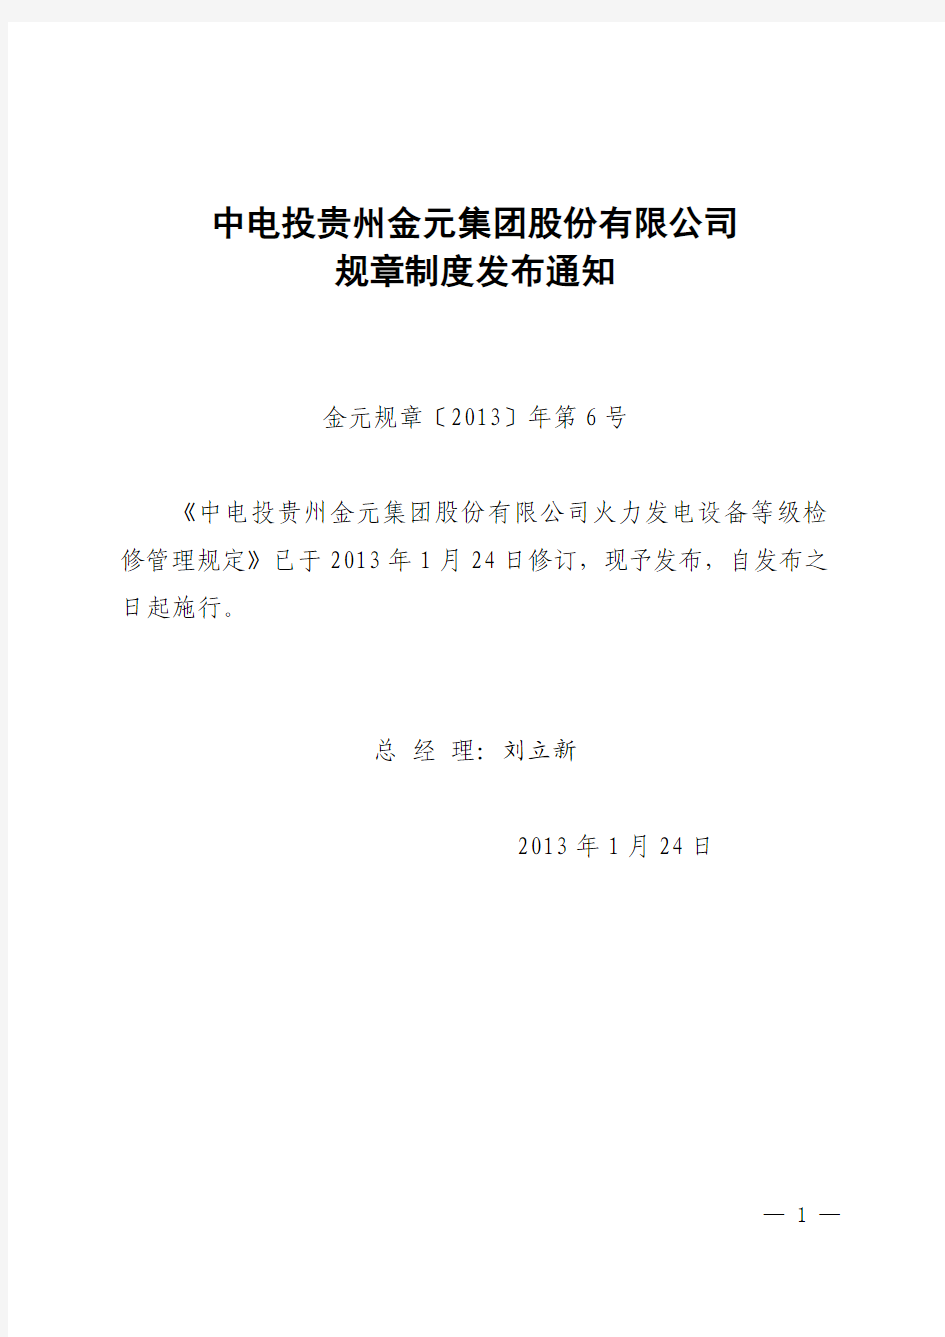 金元规章[2013]年第6号金元集团火力发电设备等级检修管理规定